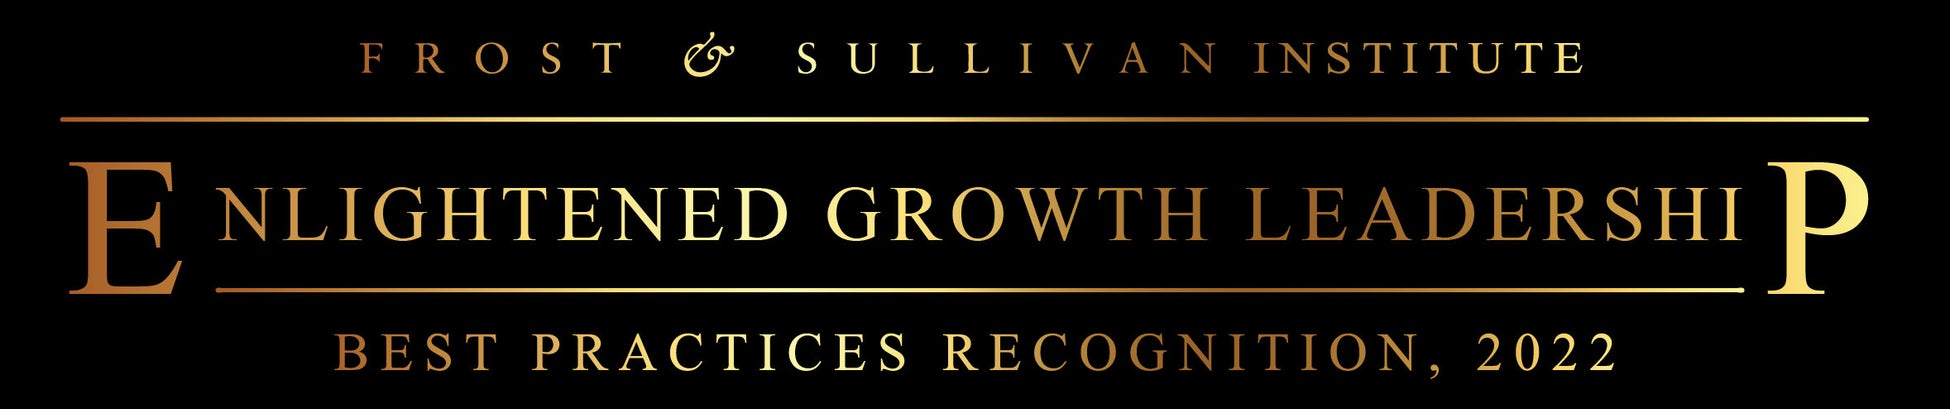 モノタロウ、Frost & Sullivan Institute「Enlightened Growth Leadership アワード2022」を受賞のサブ画像1